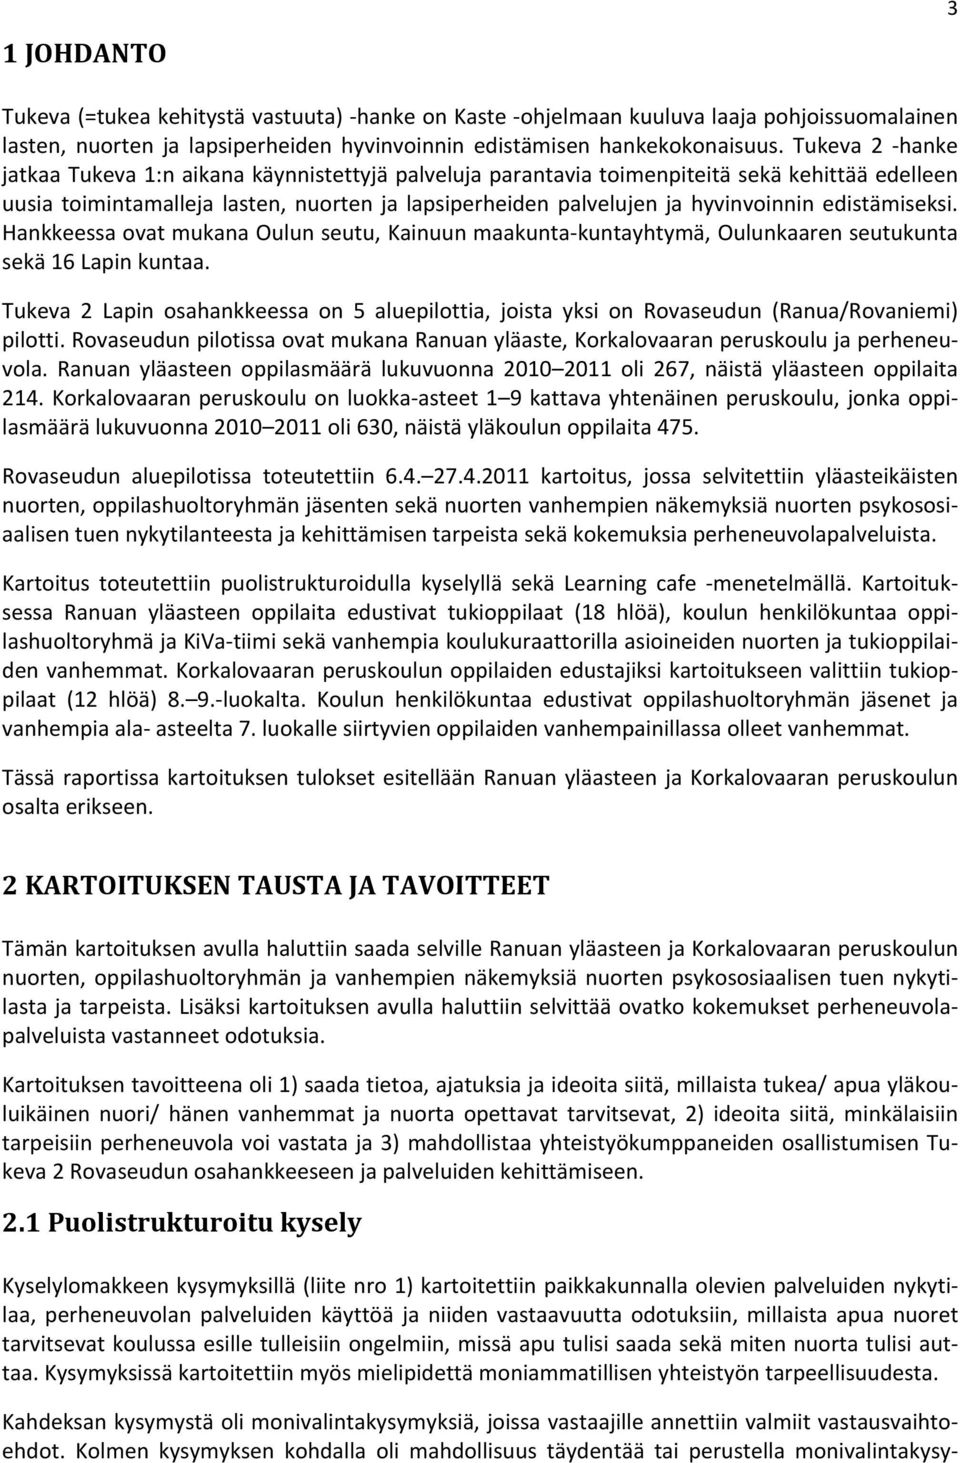 edistämiseksi. Hankkeessa ovat mukana Oulun seutu, Kainuun maakunta kuntayhtymä, Oulunkaaren seutukunta sekä 16 Lapin kuntaa.